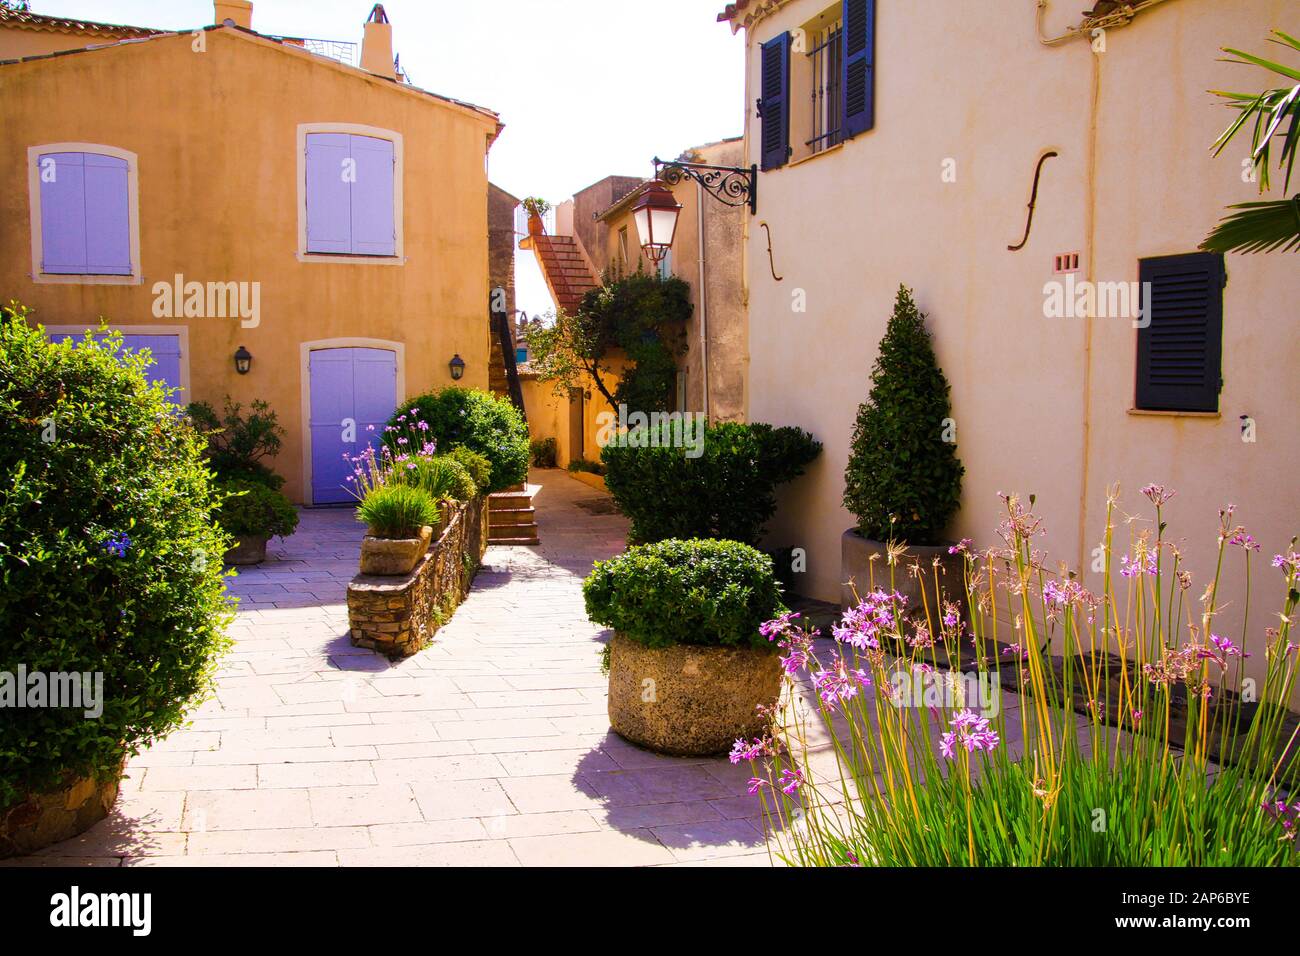 Vue sur la place du village méditerranéen décoré de pots de fleurs et de plantes vertes au soleil vif - Gassin, Côte d'Azur, France Banque D'Images